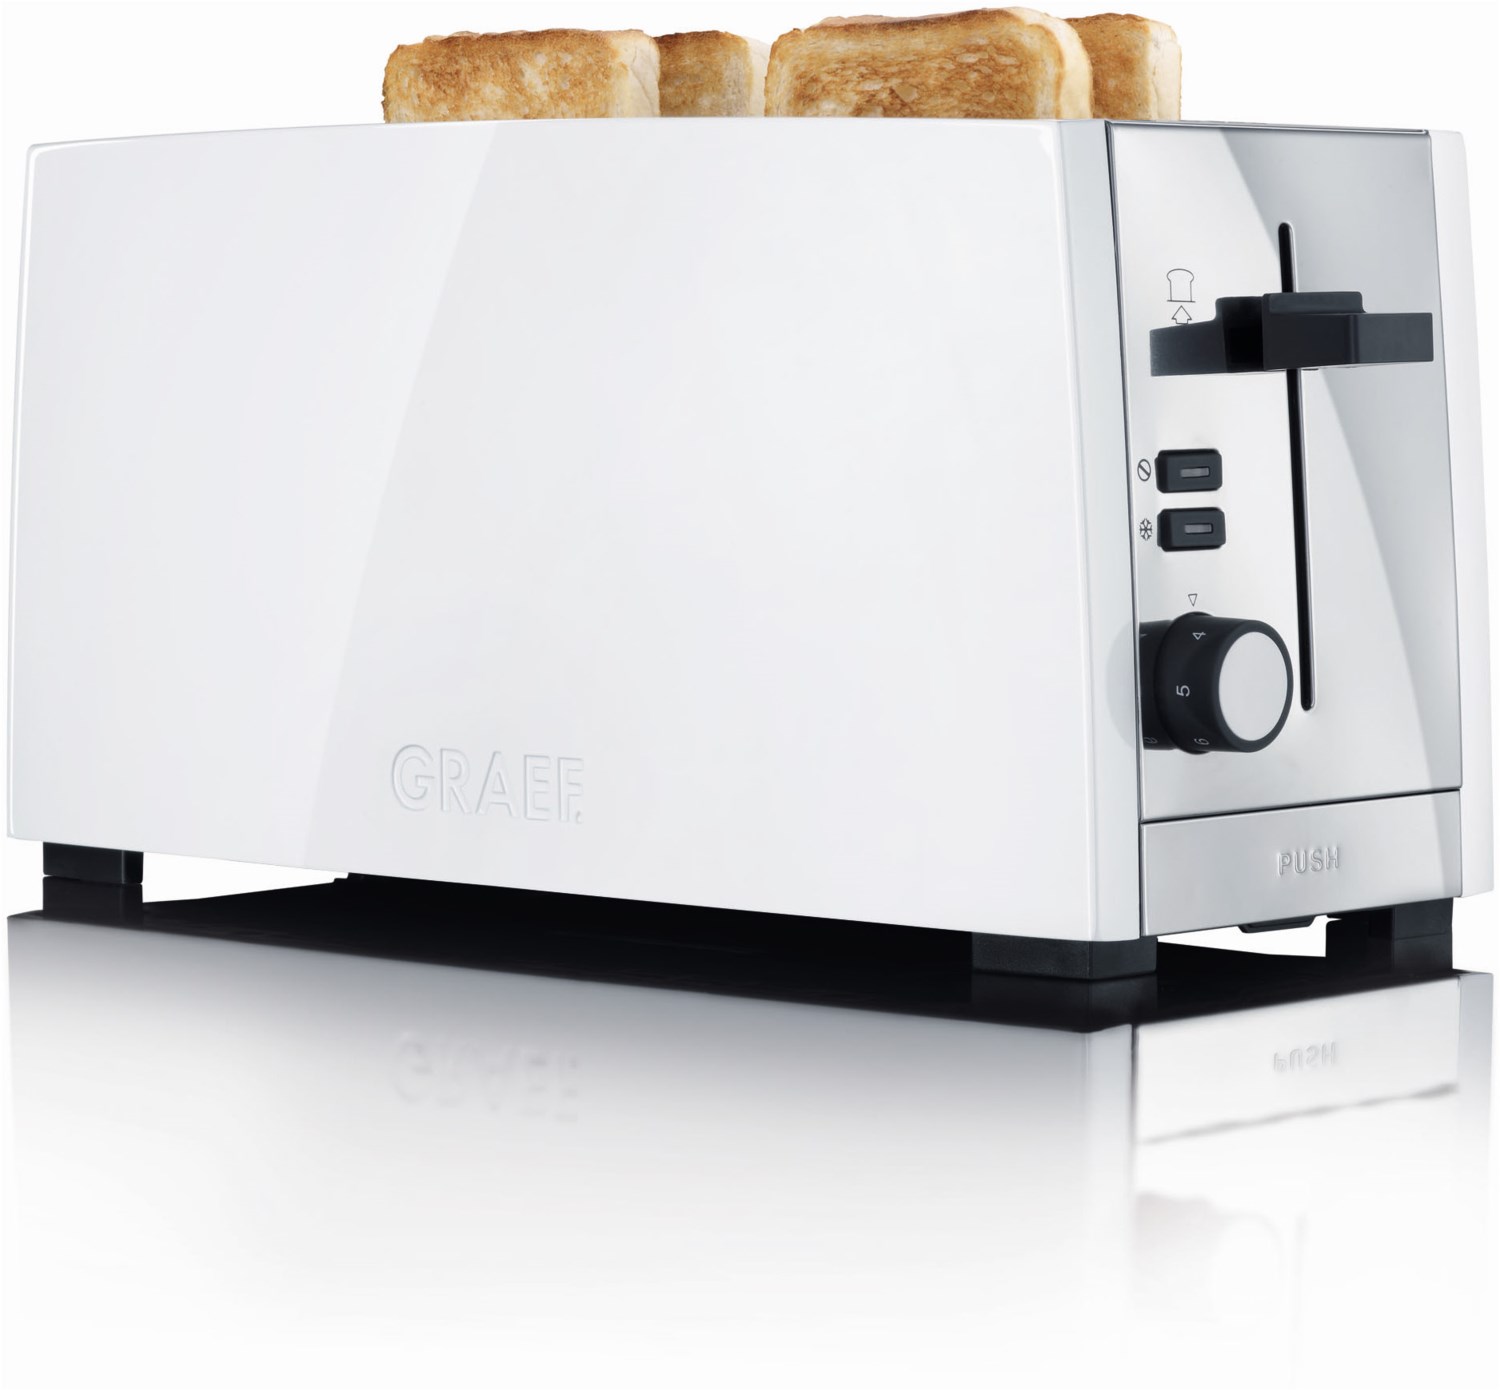 TO 101 Doppelschlitz-Toaster weiß von Graef